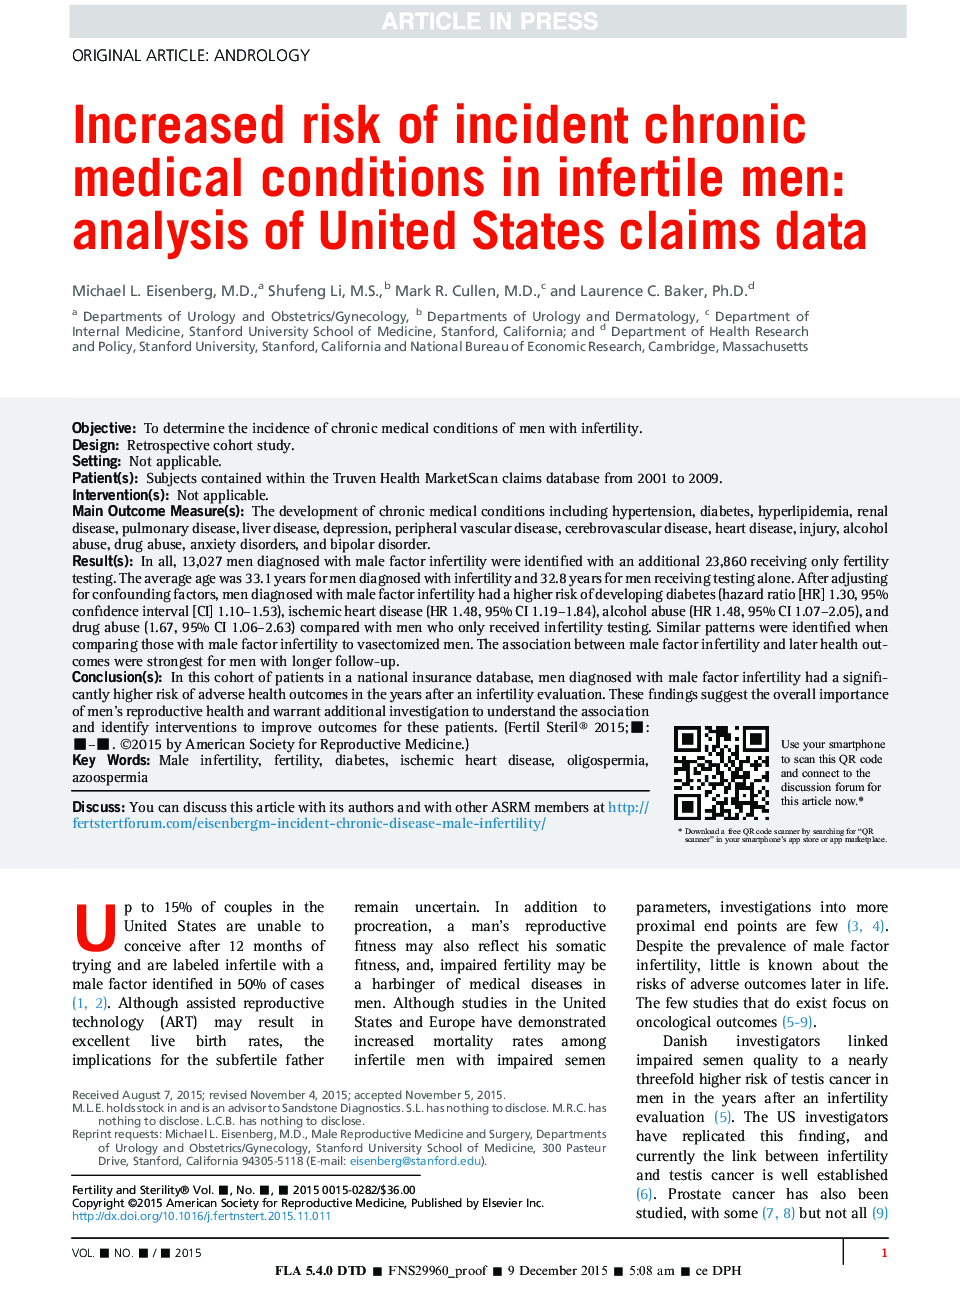 افزایش خطر ابتلا به بیماری های مزمن در مردان نابارور: تجزیه و تحلیل داده های ادعایی ایالات متحده 